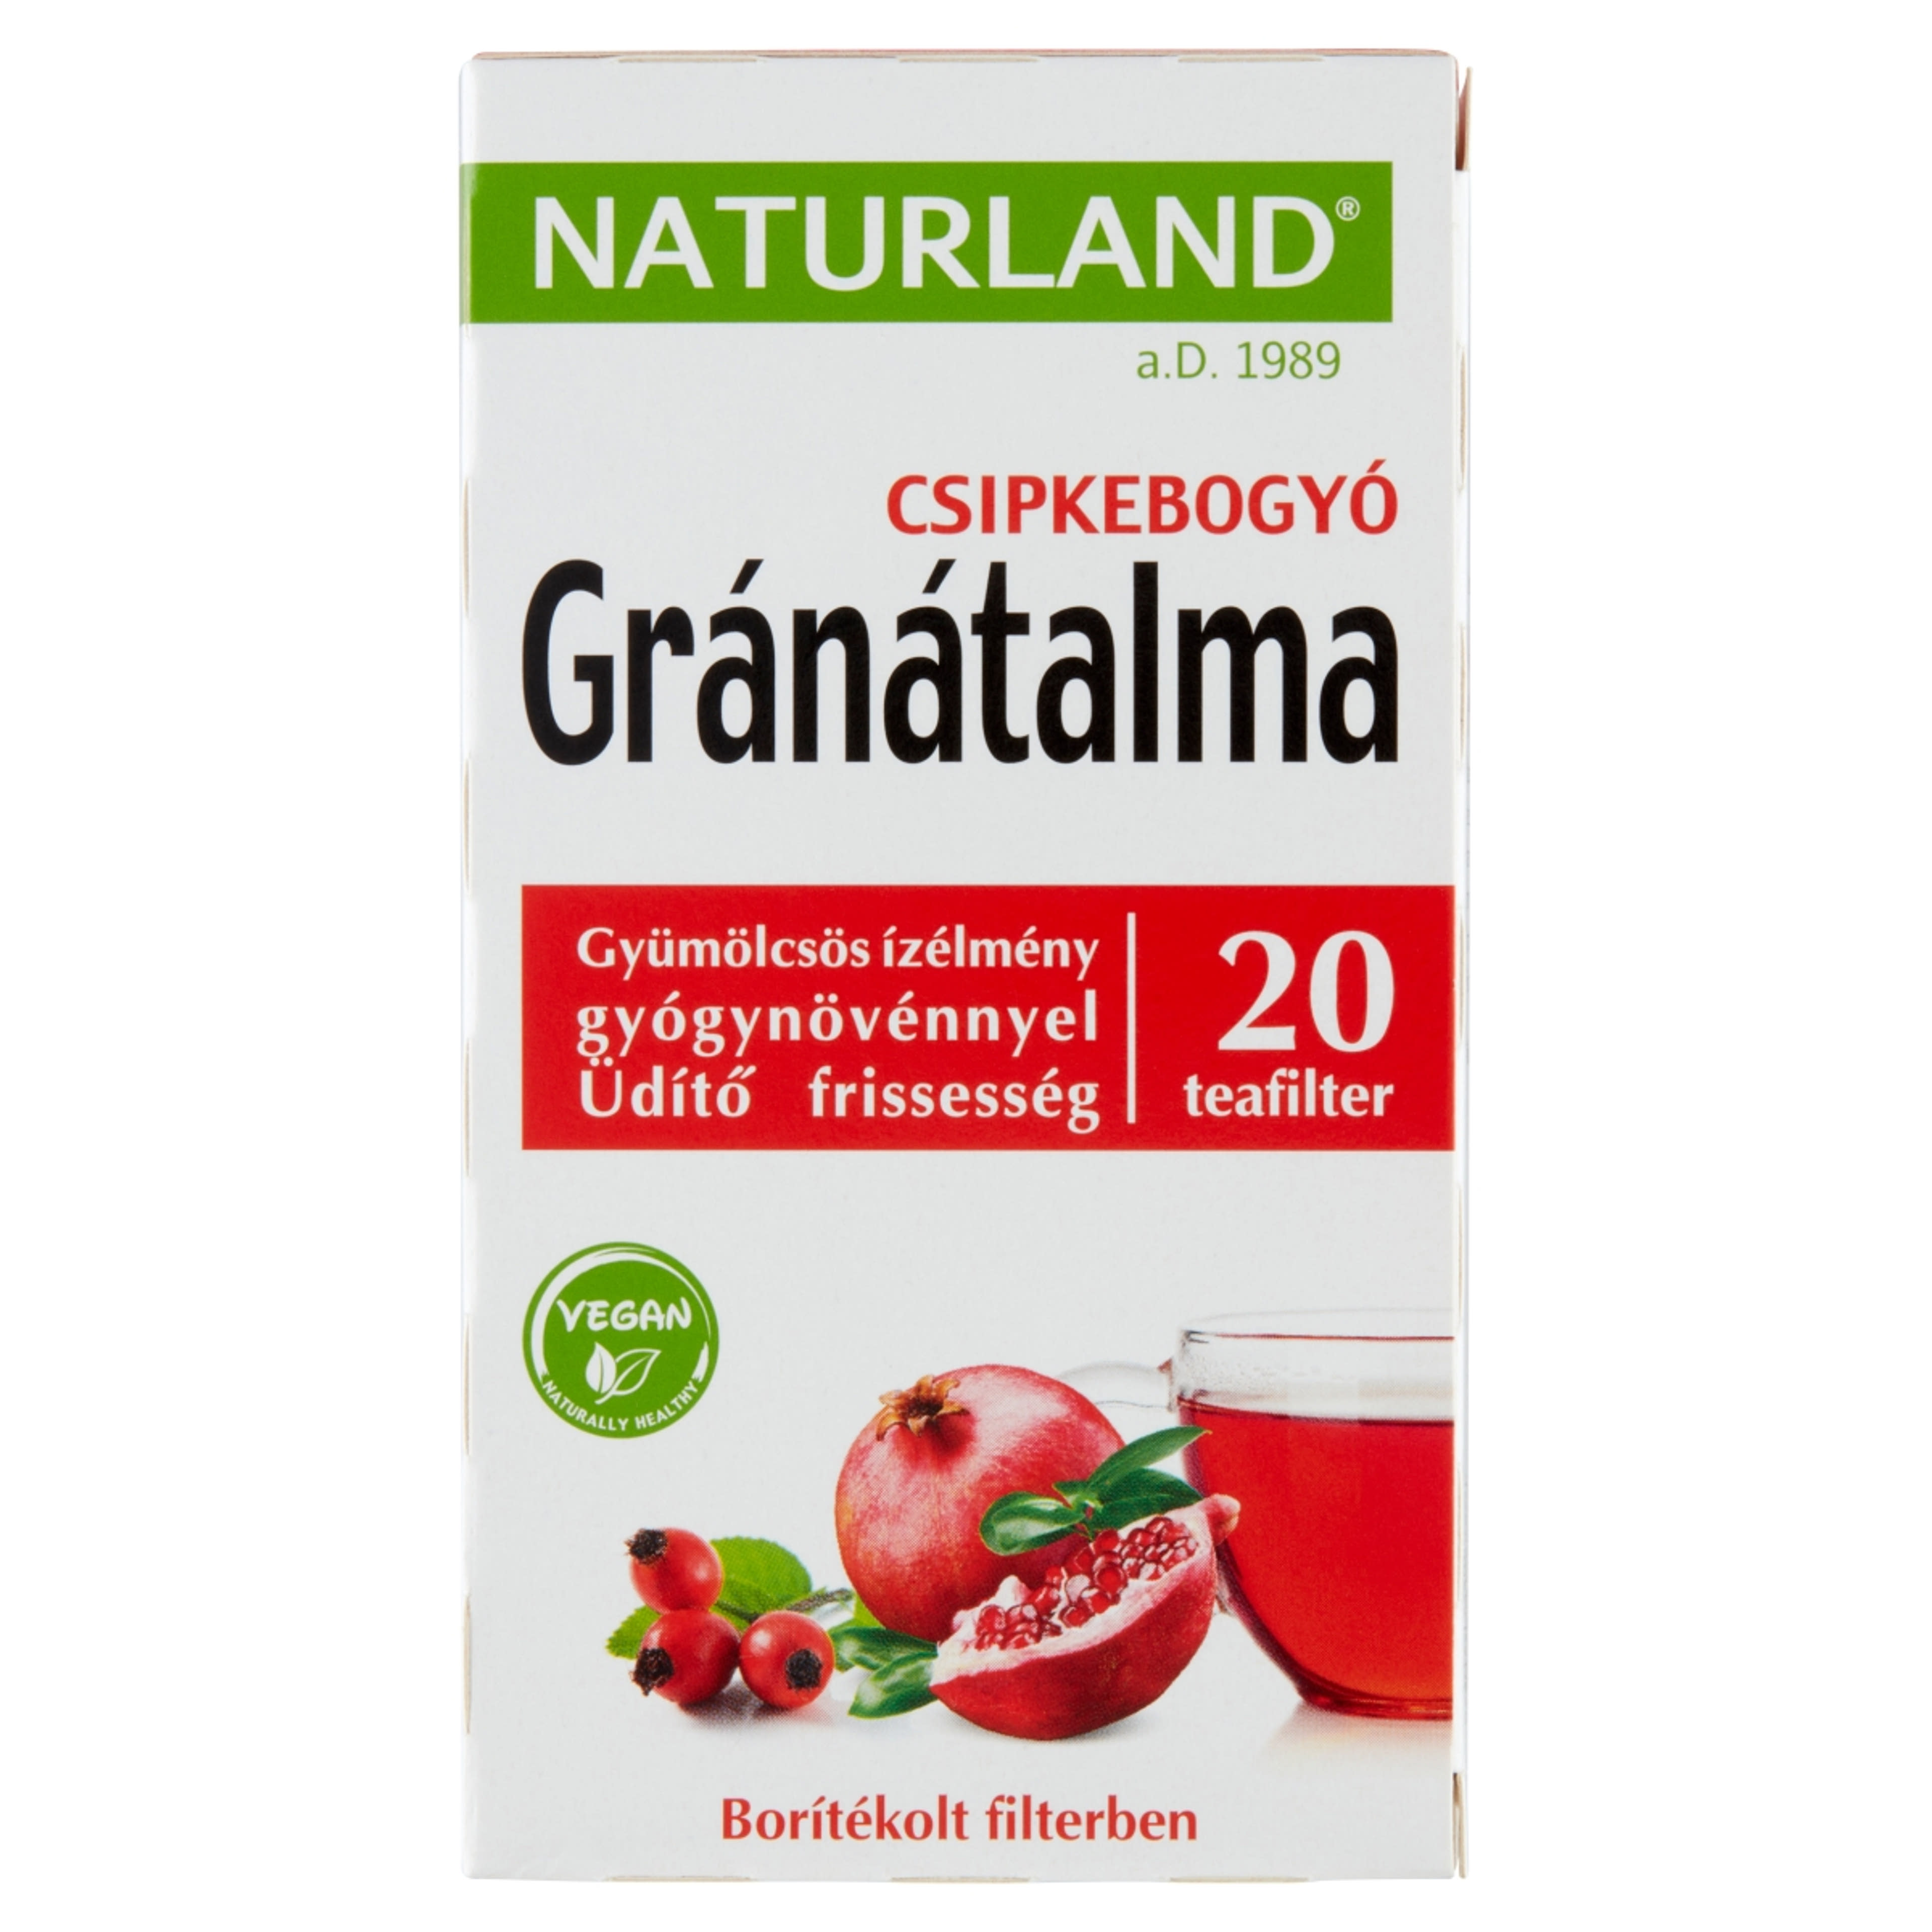 Naturland gyümölcstea gránátalma csipkebogyó, 20 filter - 40 g-1